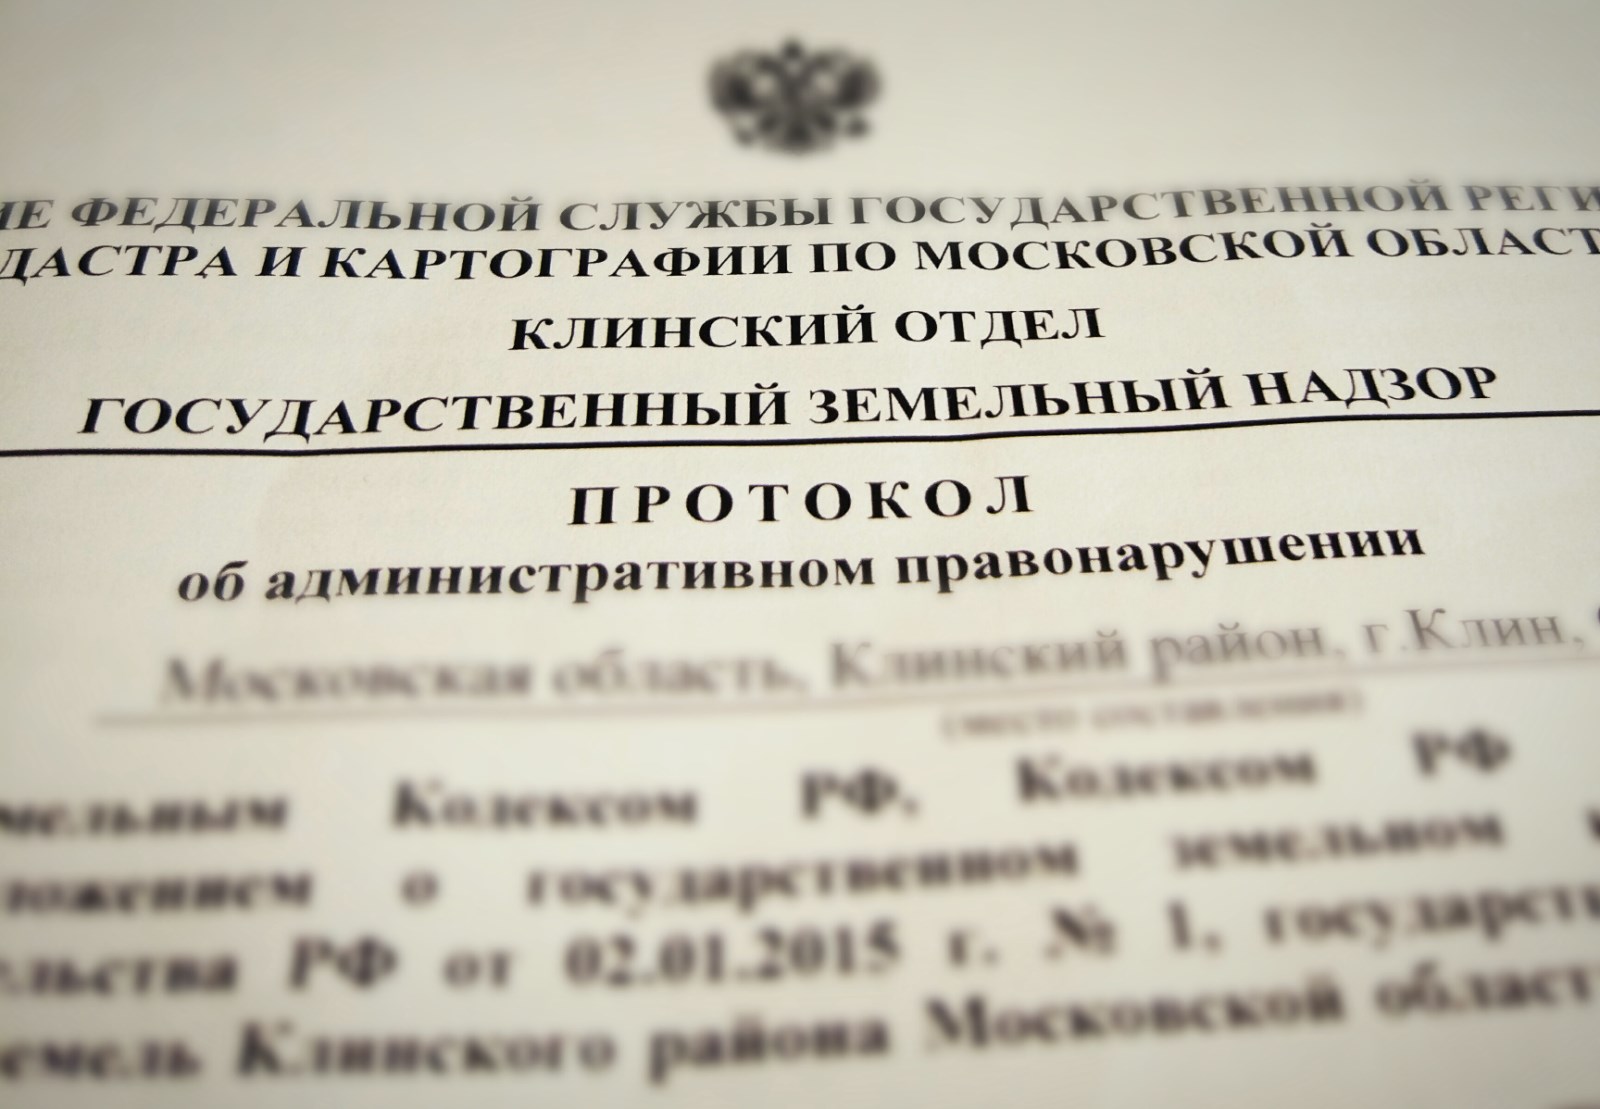 Суд удовлетворил жалобу адвоката Ромашова Р.Г. и отменил постановление Росреестра о привлечении лица к административной ответственности по ст. 7.1 КоАП РФ